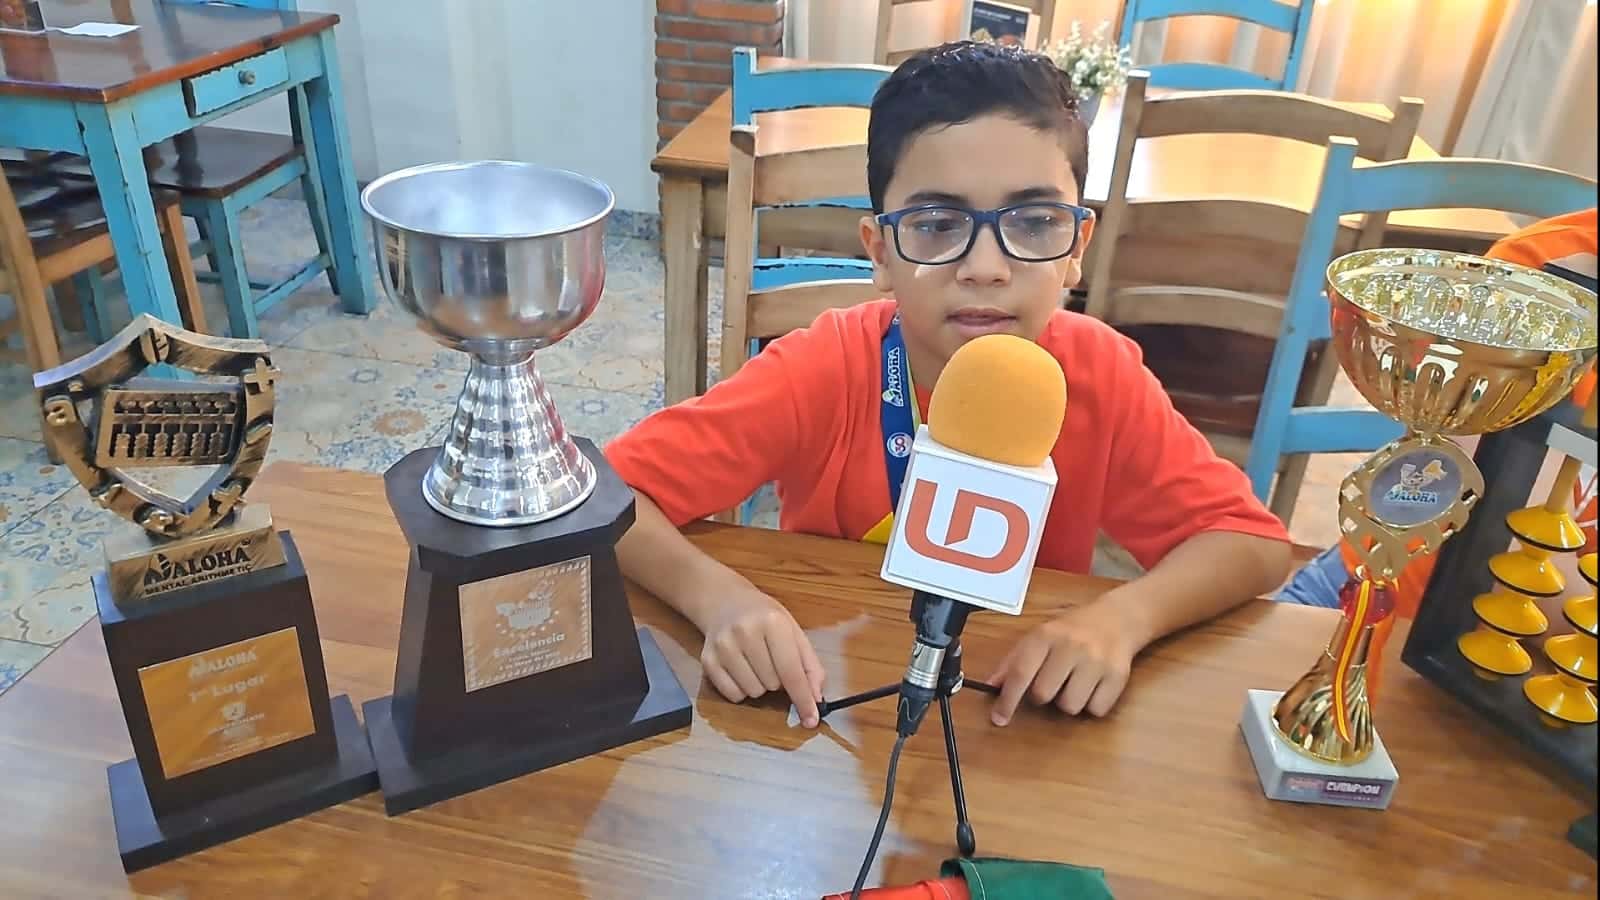 Emiliano campeón internacional de cálculo mental en Madrid